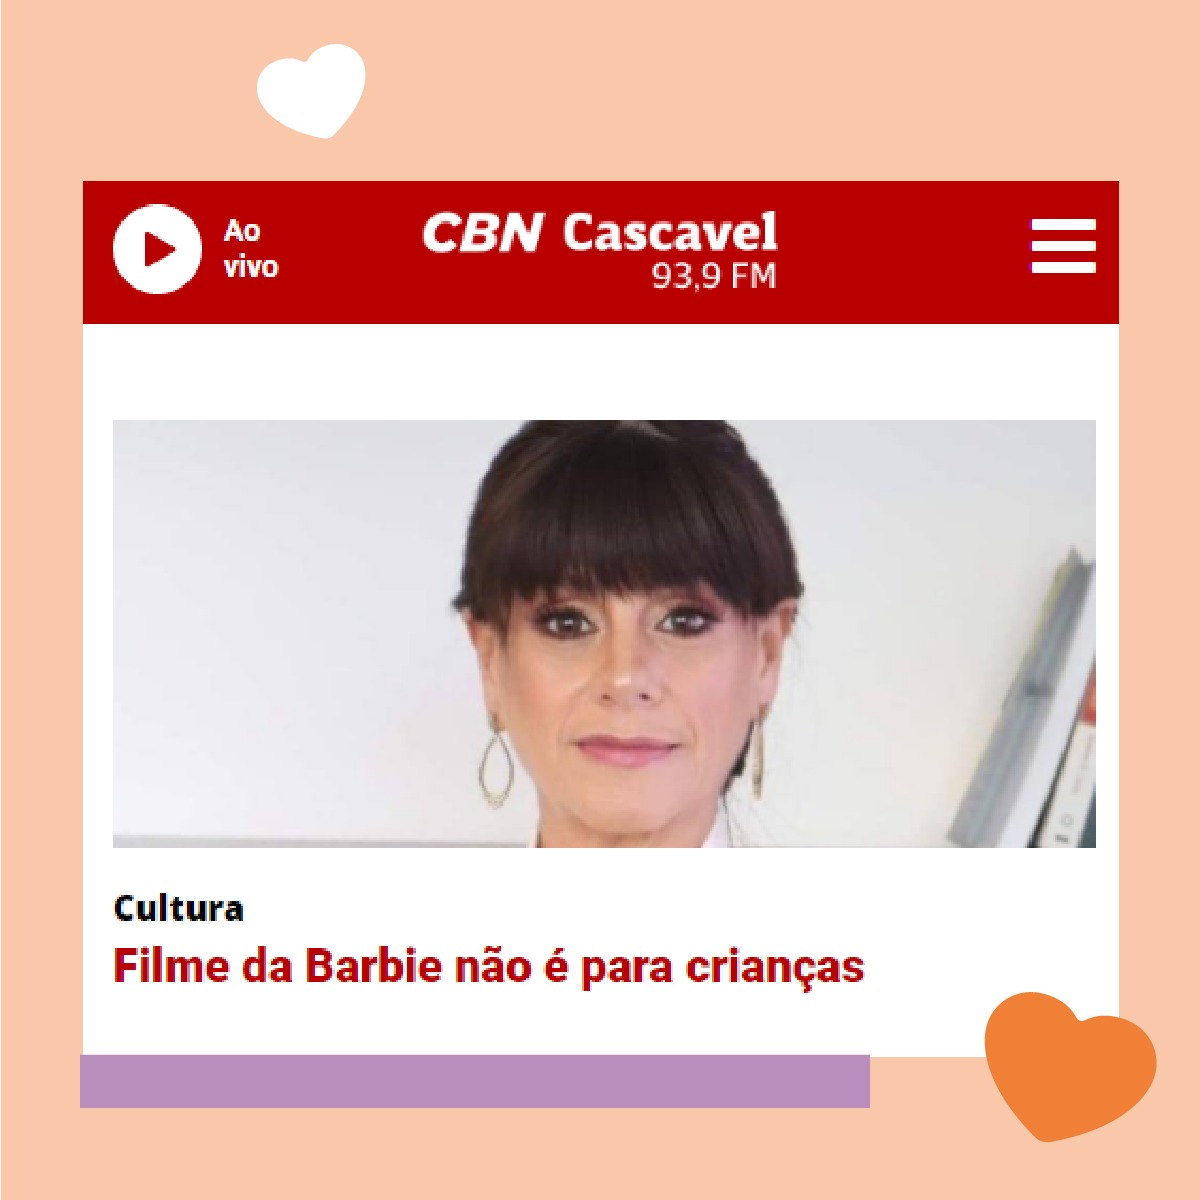 https://cbncascaveloficial.com.br/noticia/filme-da-barbie-nao-e-para-criancas